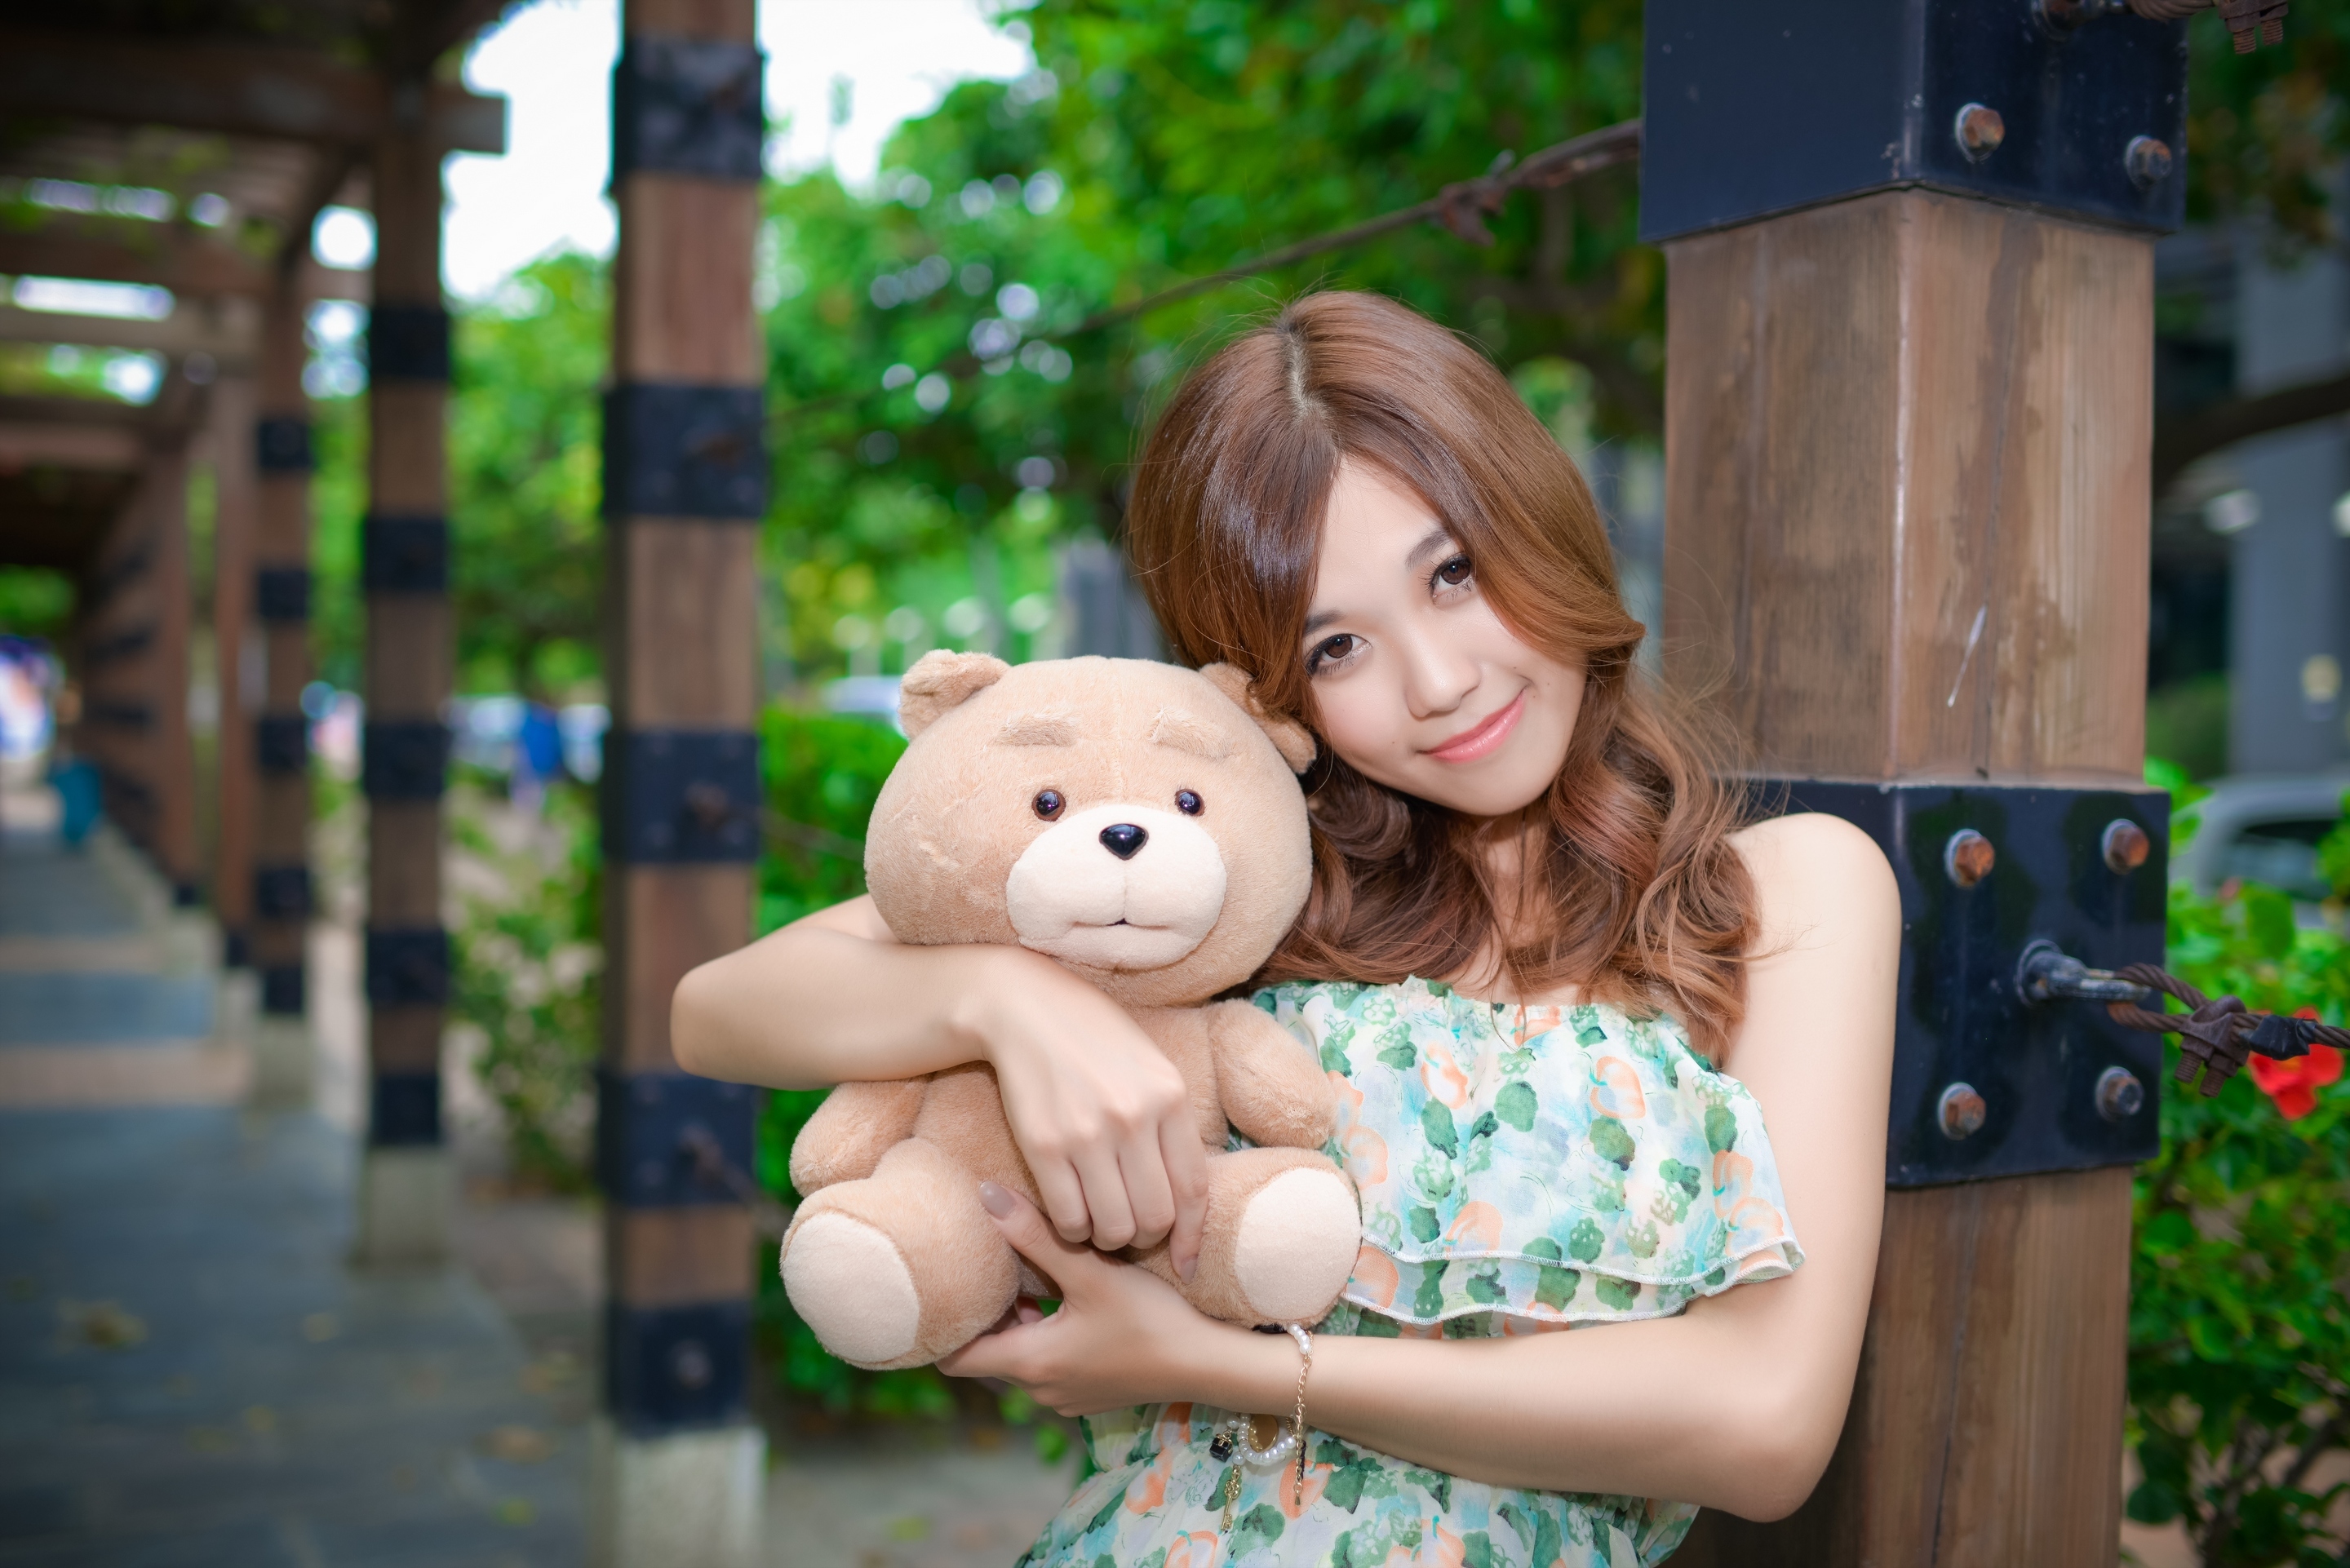 Картинка: Девушка, азиатка, игрушка, плюшевый медведь, настроение, обнимает